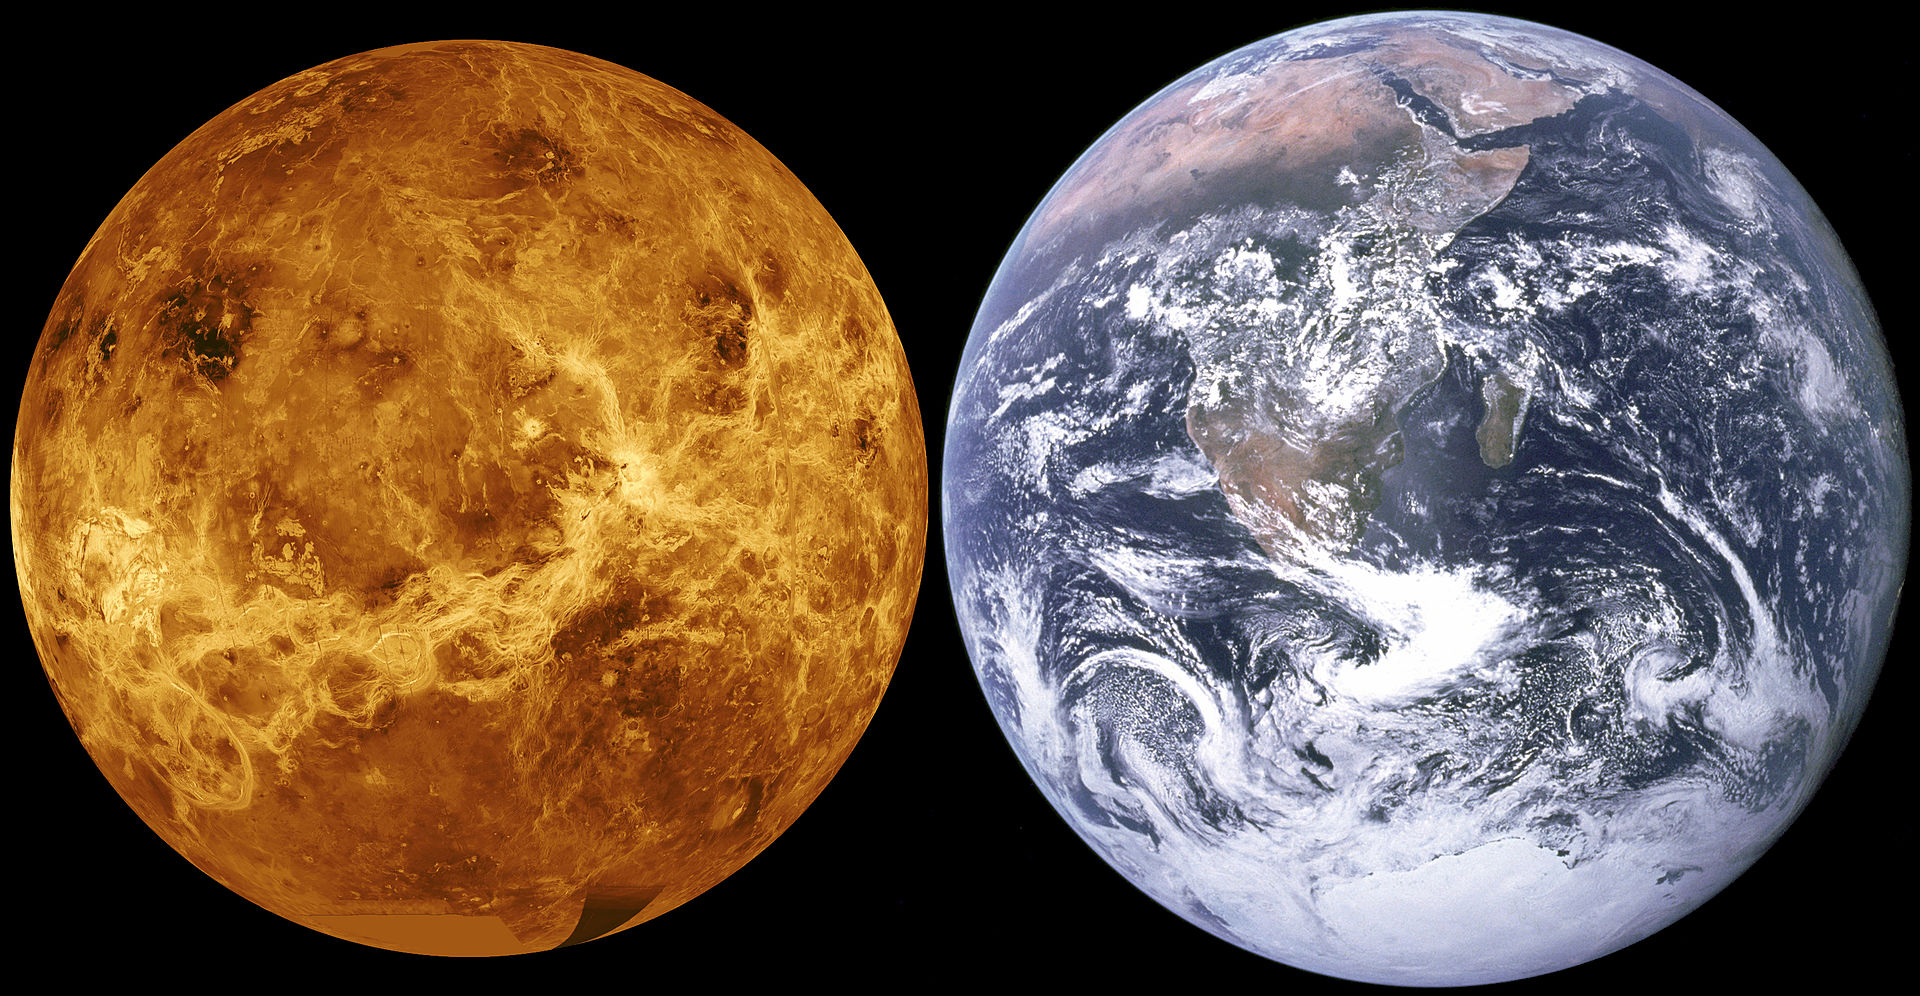 金星は地球と多くの類似点を持つが、基本的な特性は謎のままだ